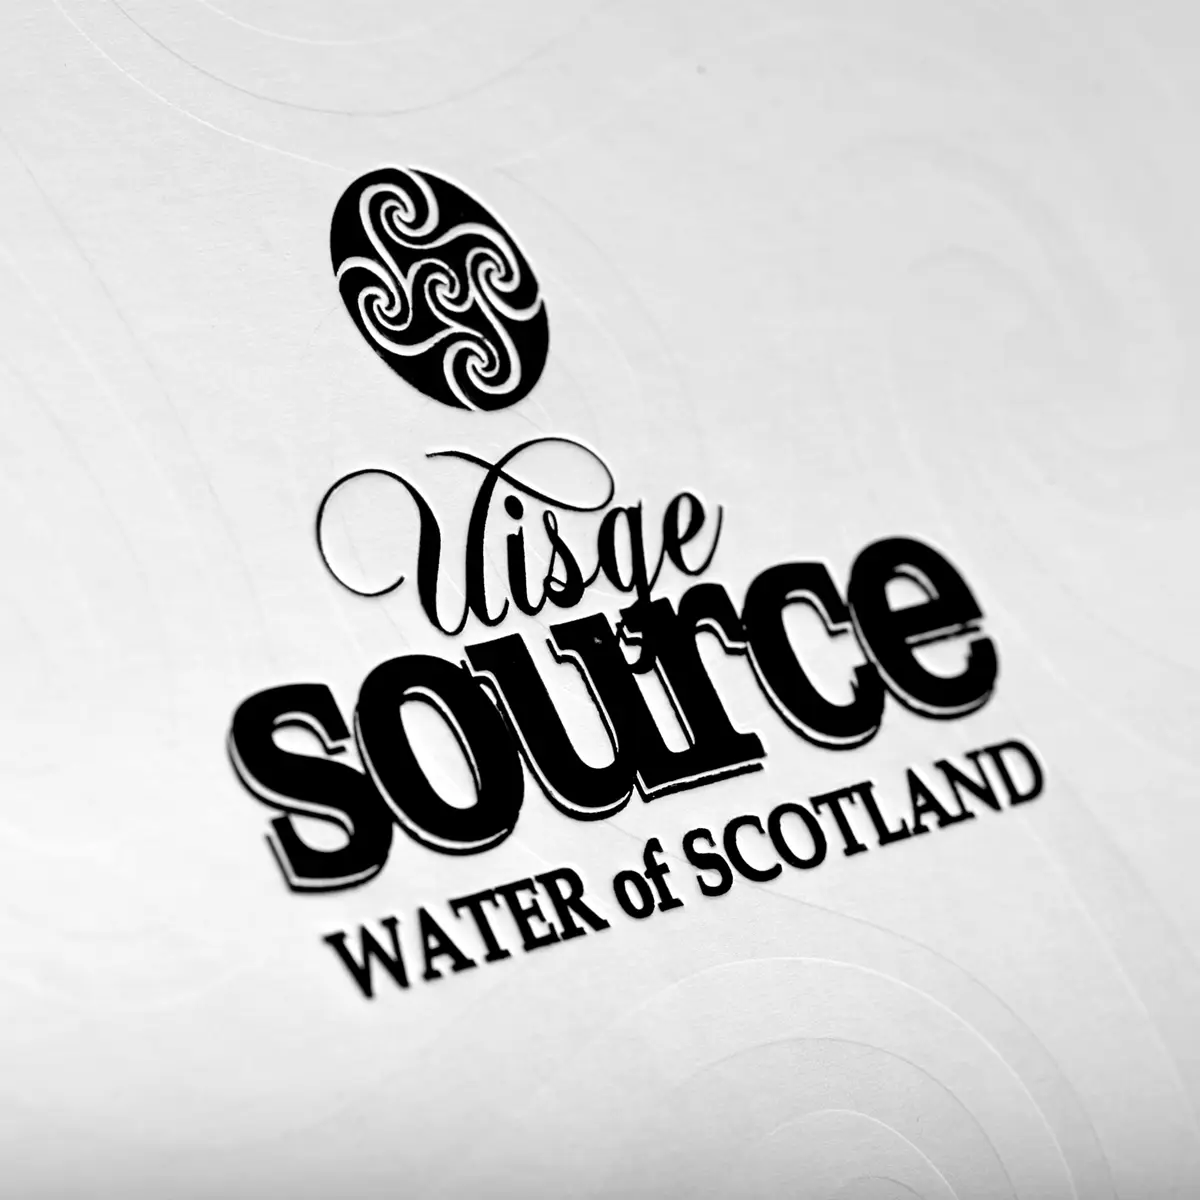 Islay - Uisge Source Whisky Wasser aus Schottland